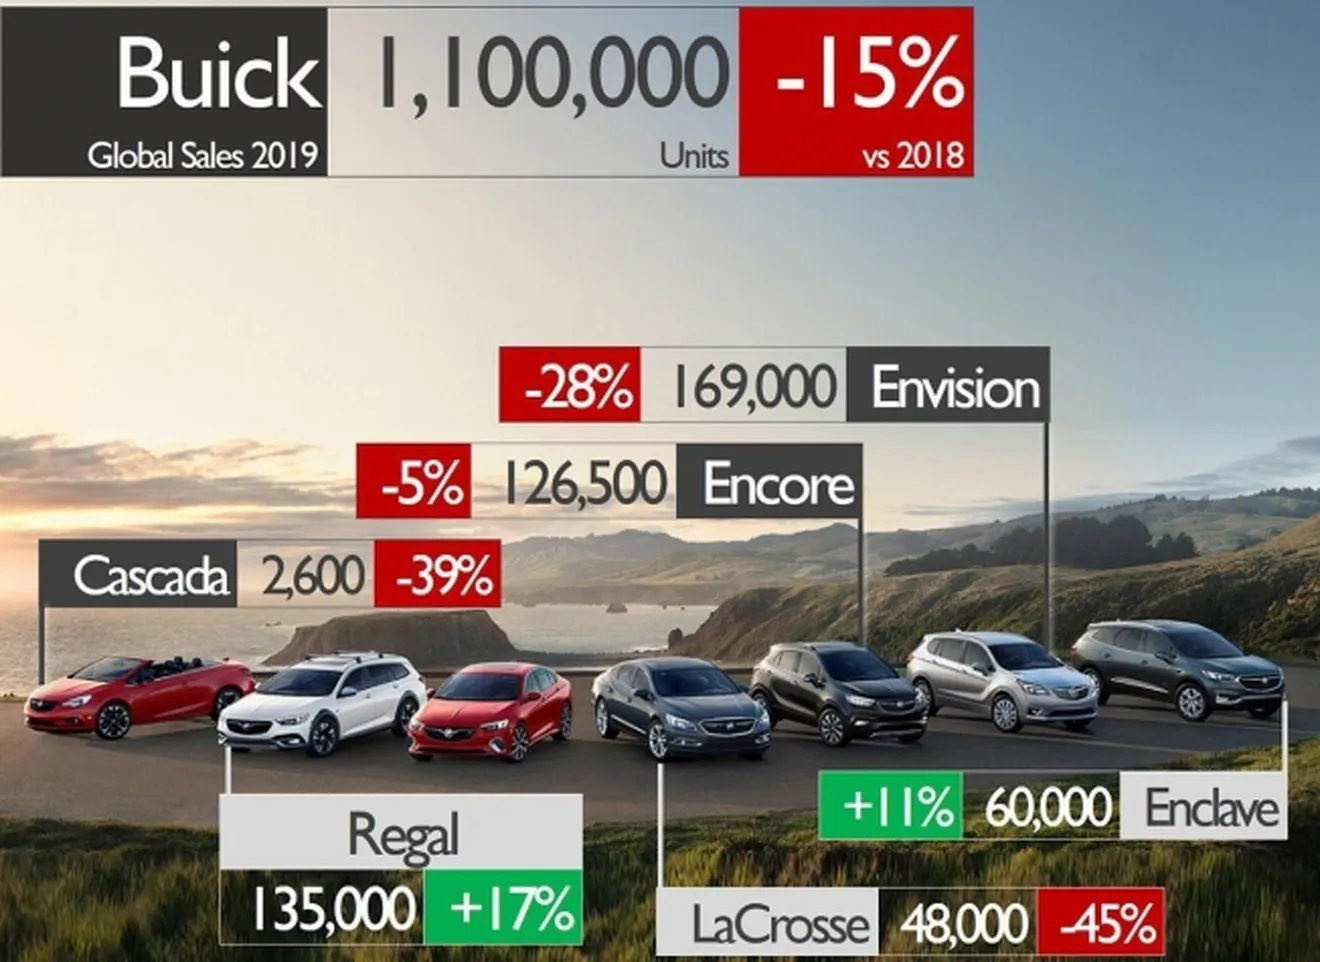 Ventas globales de Buick en 2019